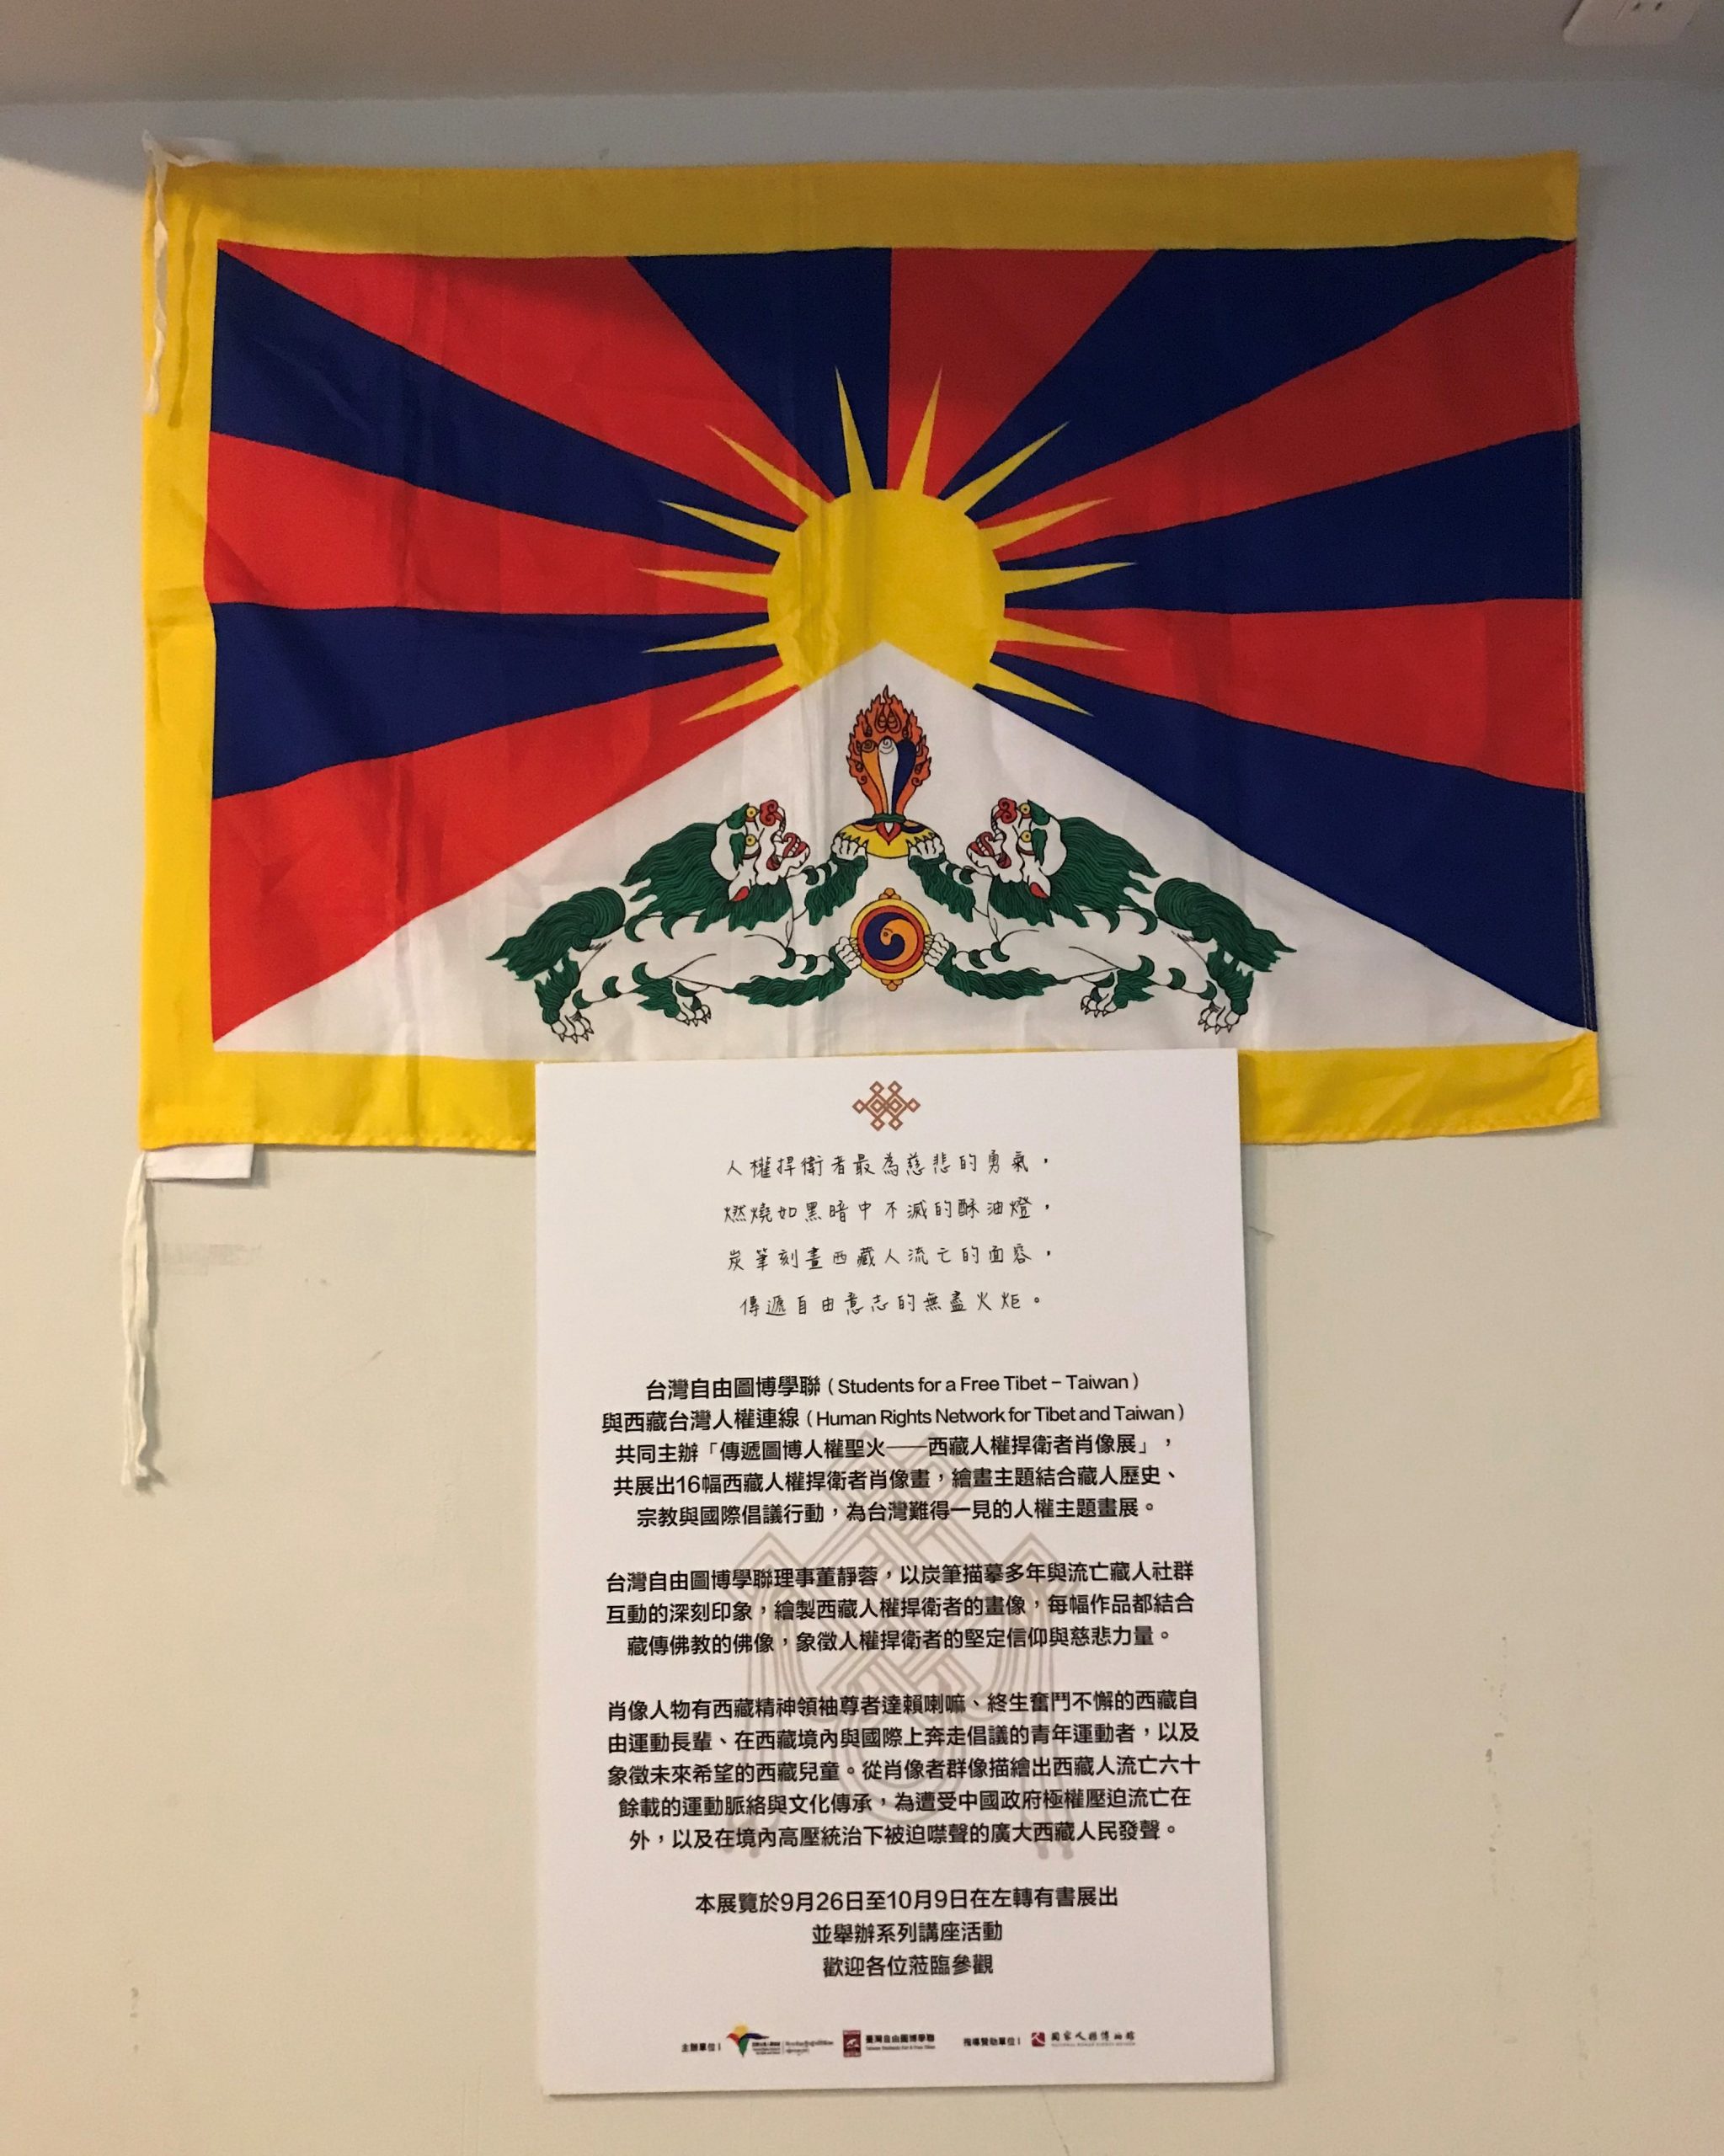 現代的西藏國旗（圖博雪獅旗）正式產生於1916年，並於1918年經十三世達賴喇嘛確認後正式使用。據記載，其最早可溯源自西元七世紀的西藏贊普（吐蕃）世代，當時西藏軍旗的圖案大都有雪山獅子。圖/吳佩儒攝影